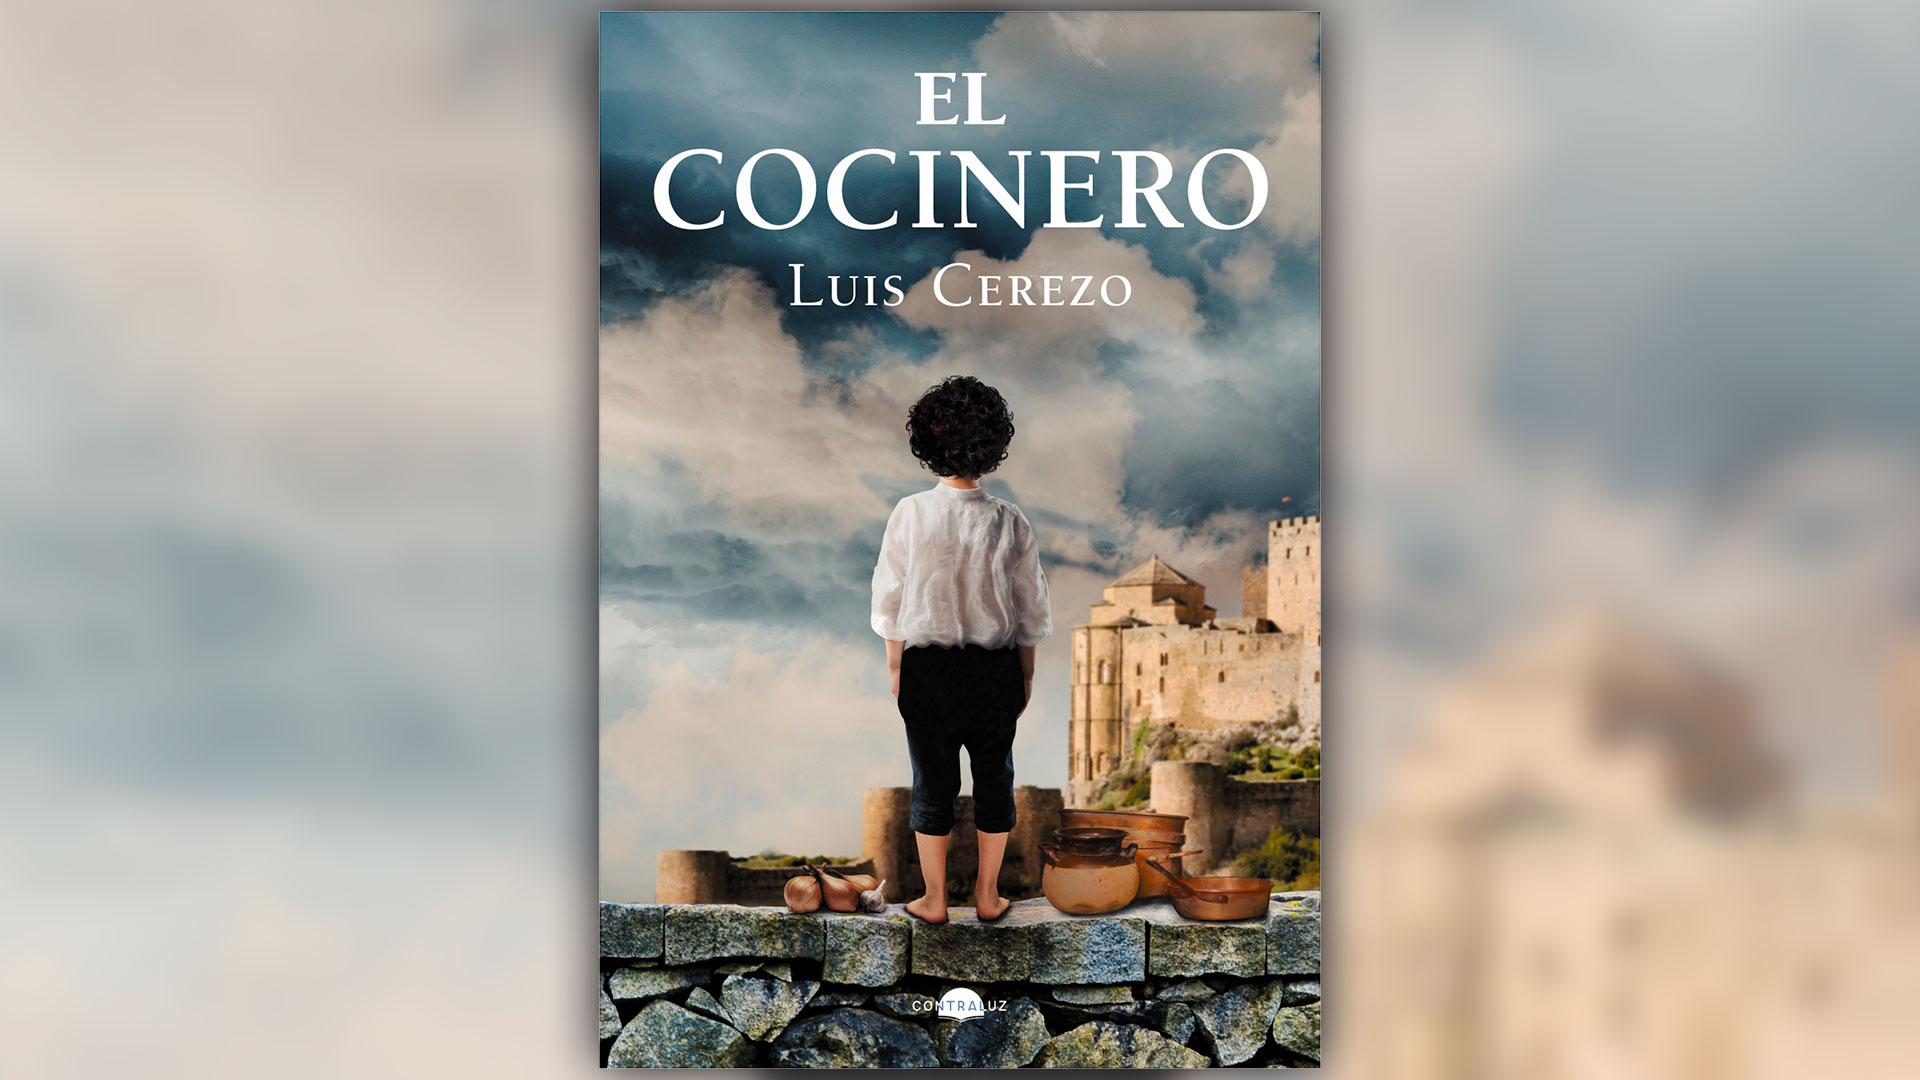 Portada del libro "El cocinero" de Luis Cerezo (Contraluz Editorial)